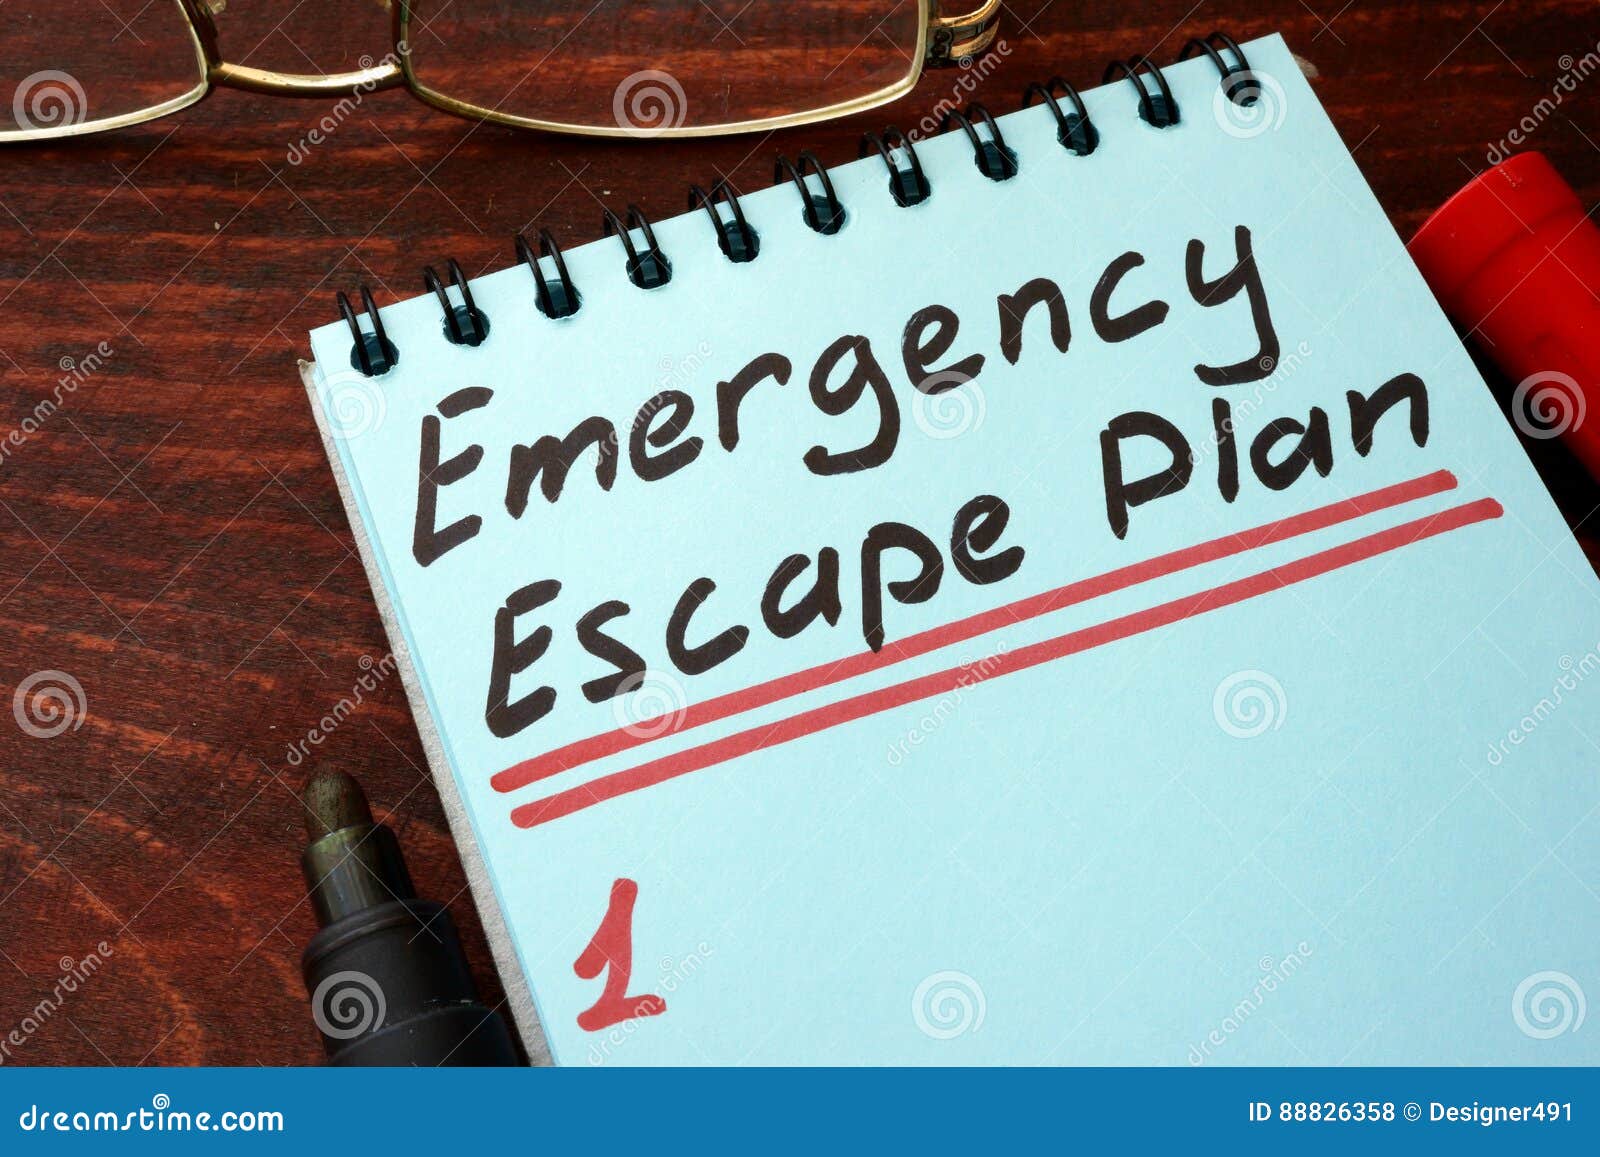 emergency escape plan written on a notepad.